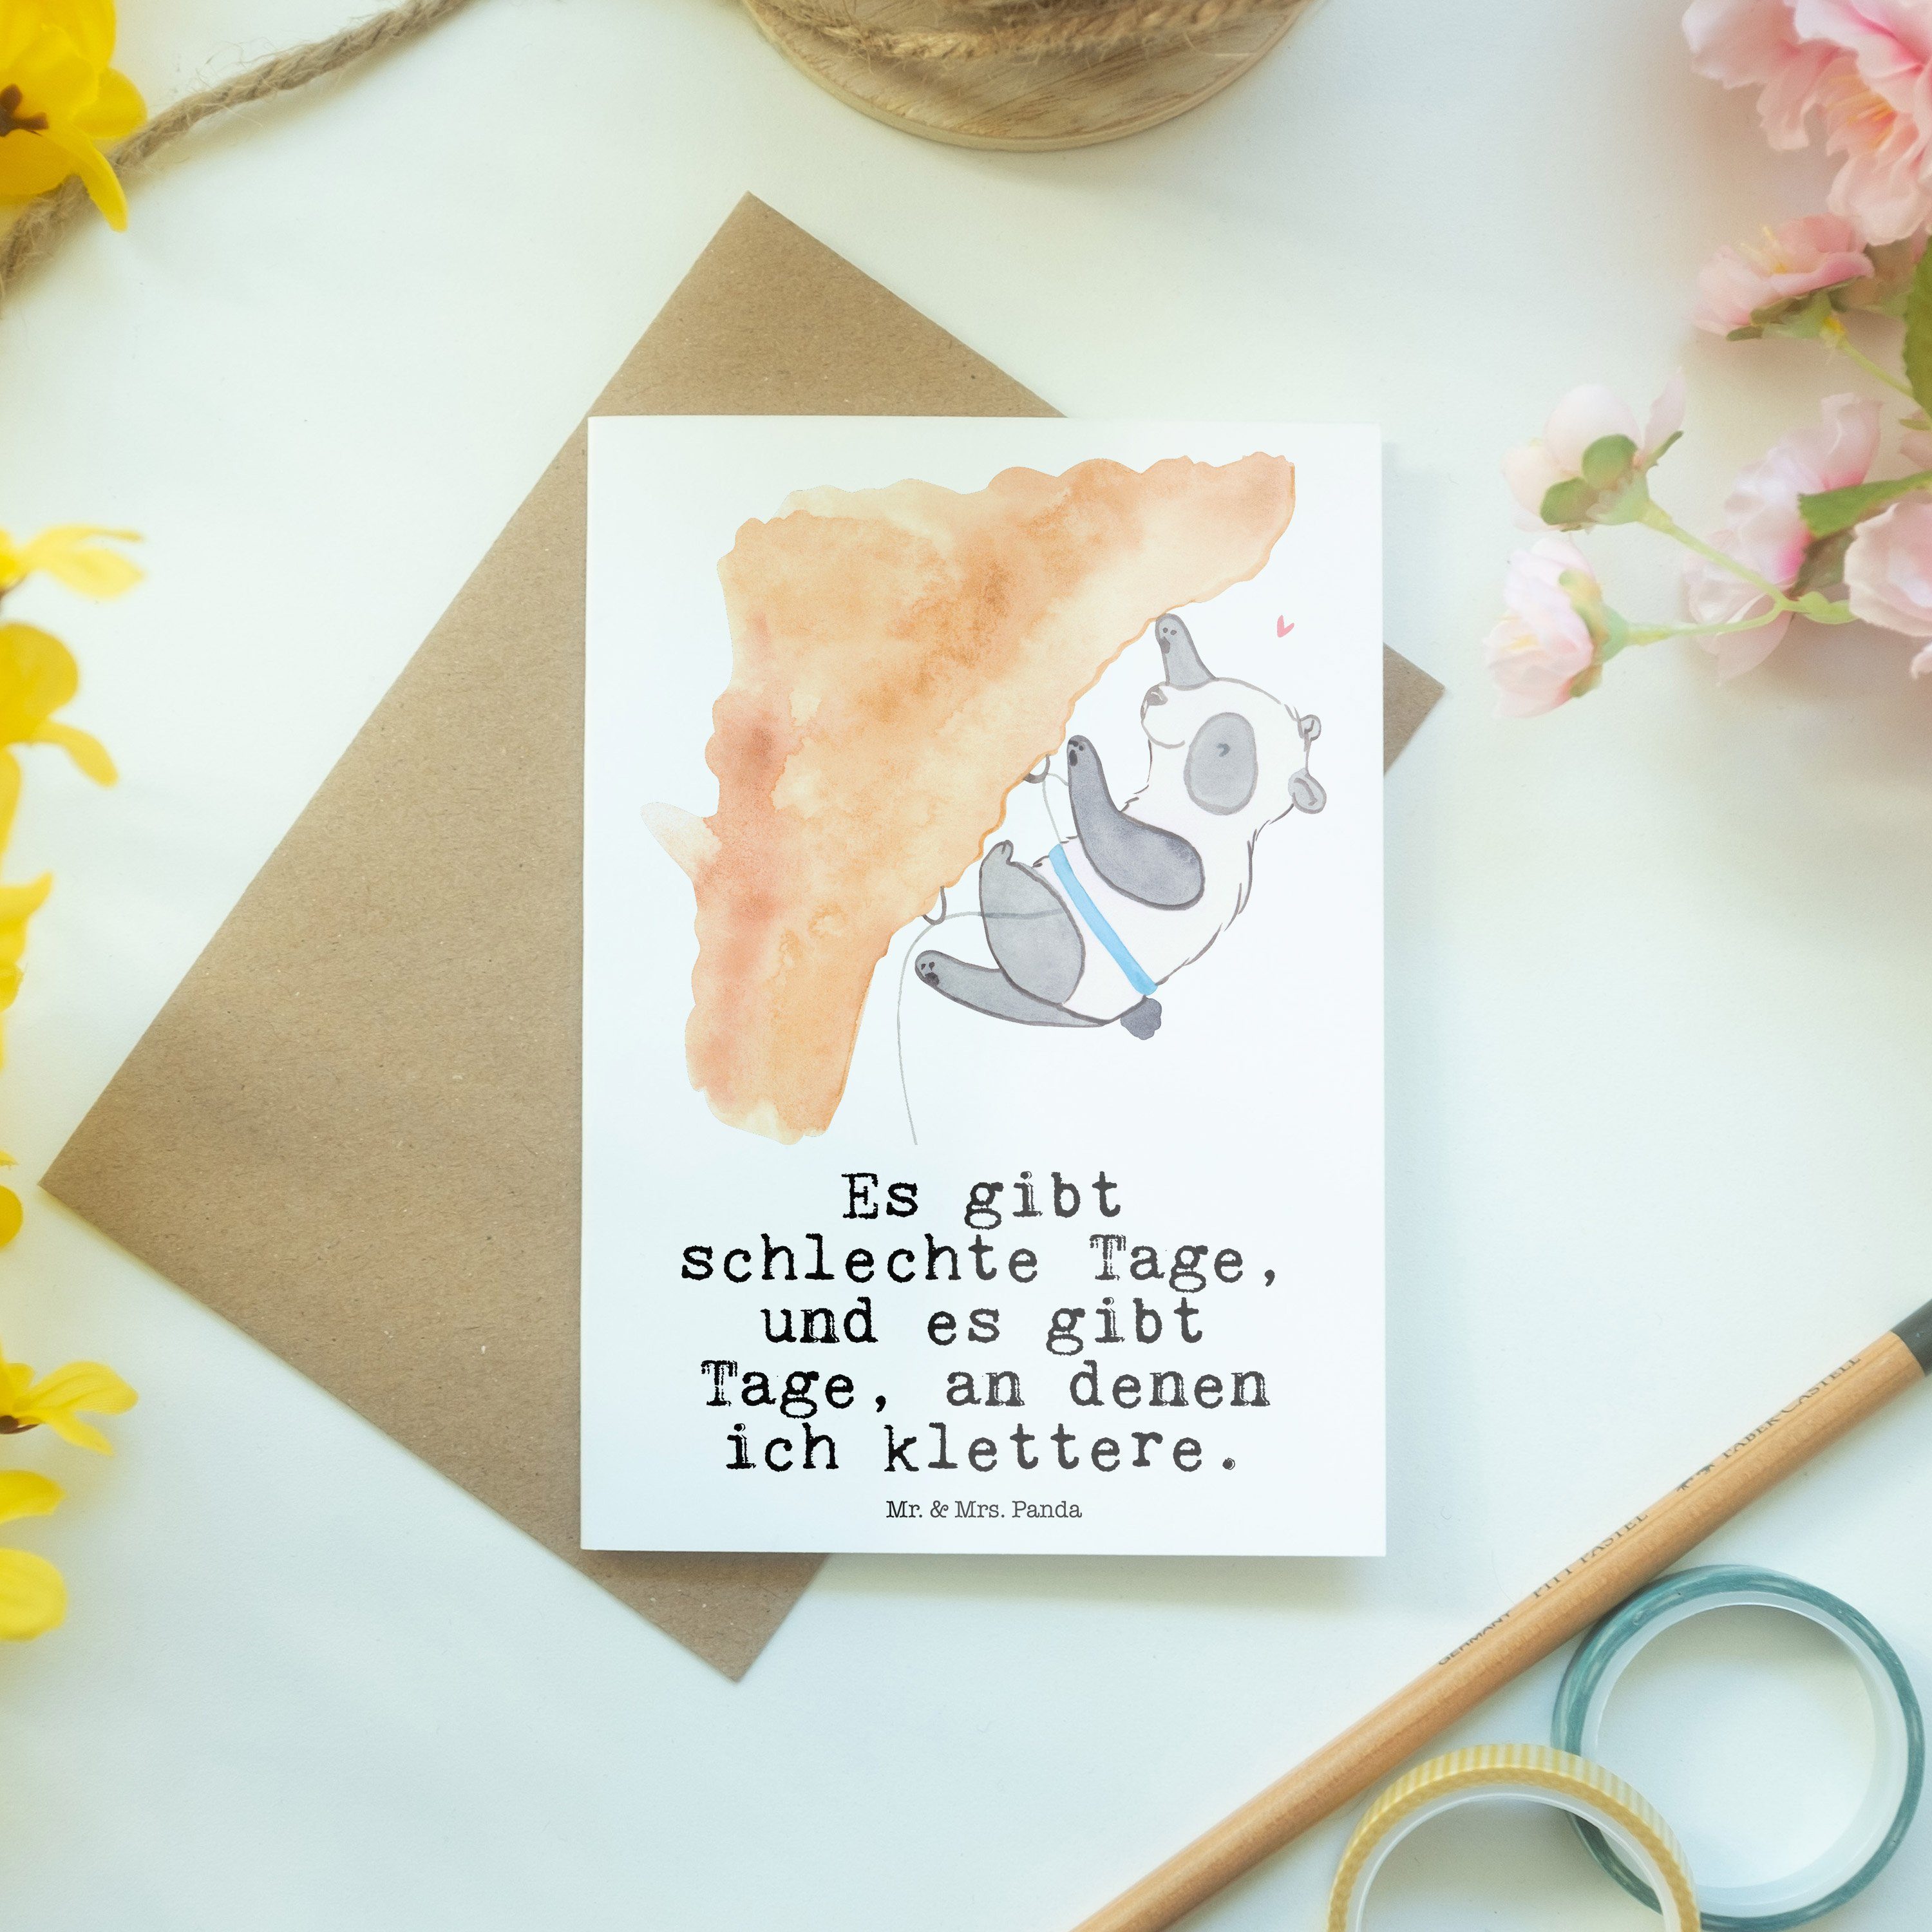 Mr. & Mrs. Panda Klettern Geschenk, - Grußkarte Panda - Hochzeitskarte, Einladungskart Weiß Tage